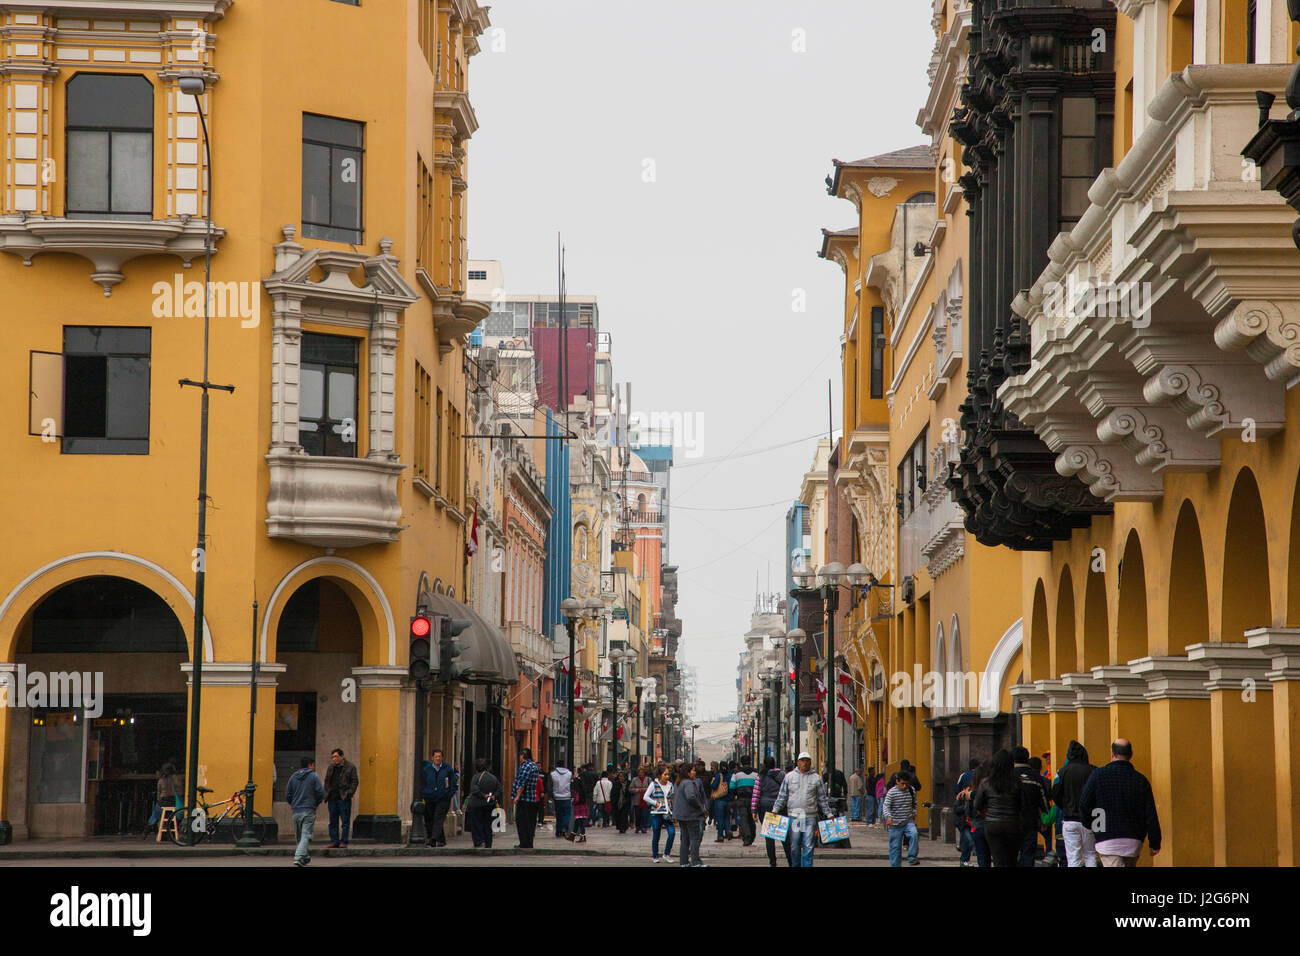 Beschrieben als der Geburtsort von Lima, gebaut im Auftrag von Charles 1. Spanien, begann der Bau im Jahre 1535 unter dem Kommando von Francisco Pizarro. Dies ist einer der Wege, aus denen sich der Plaza Mayor. Stockfoto